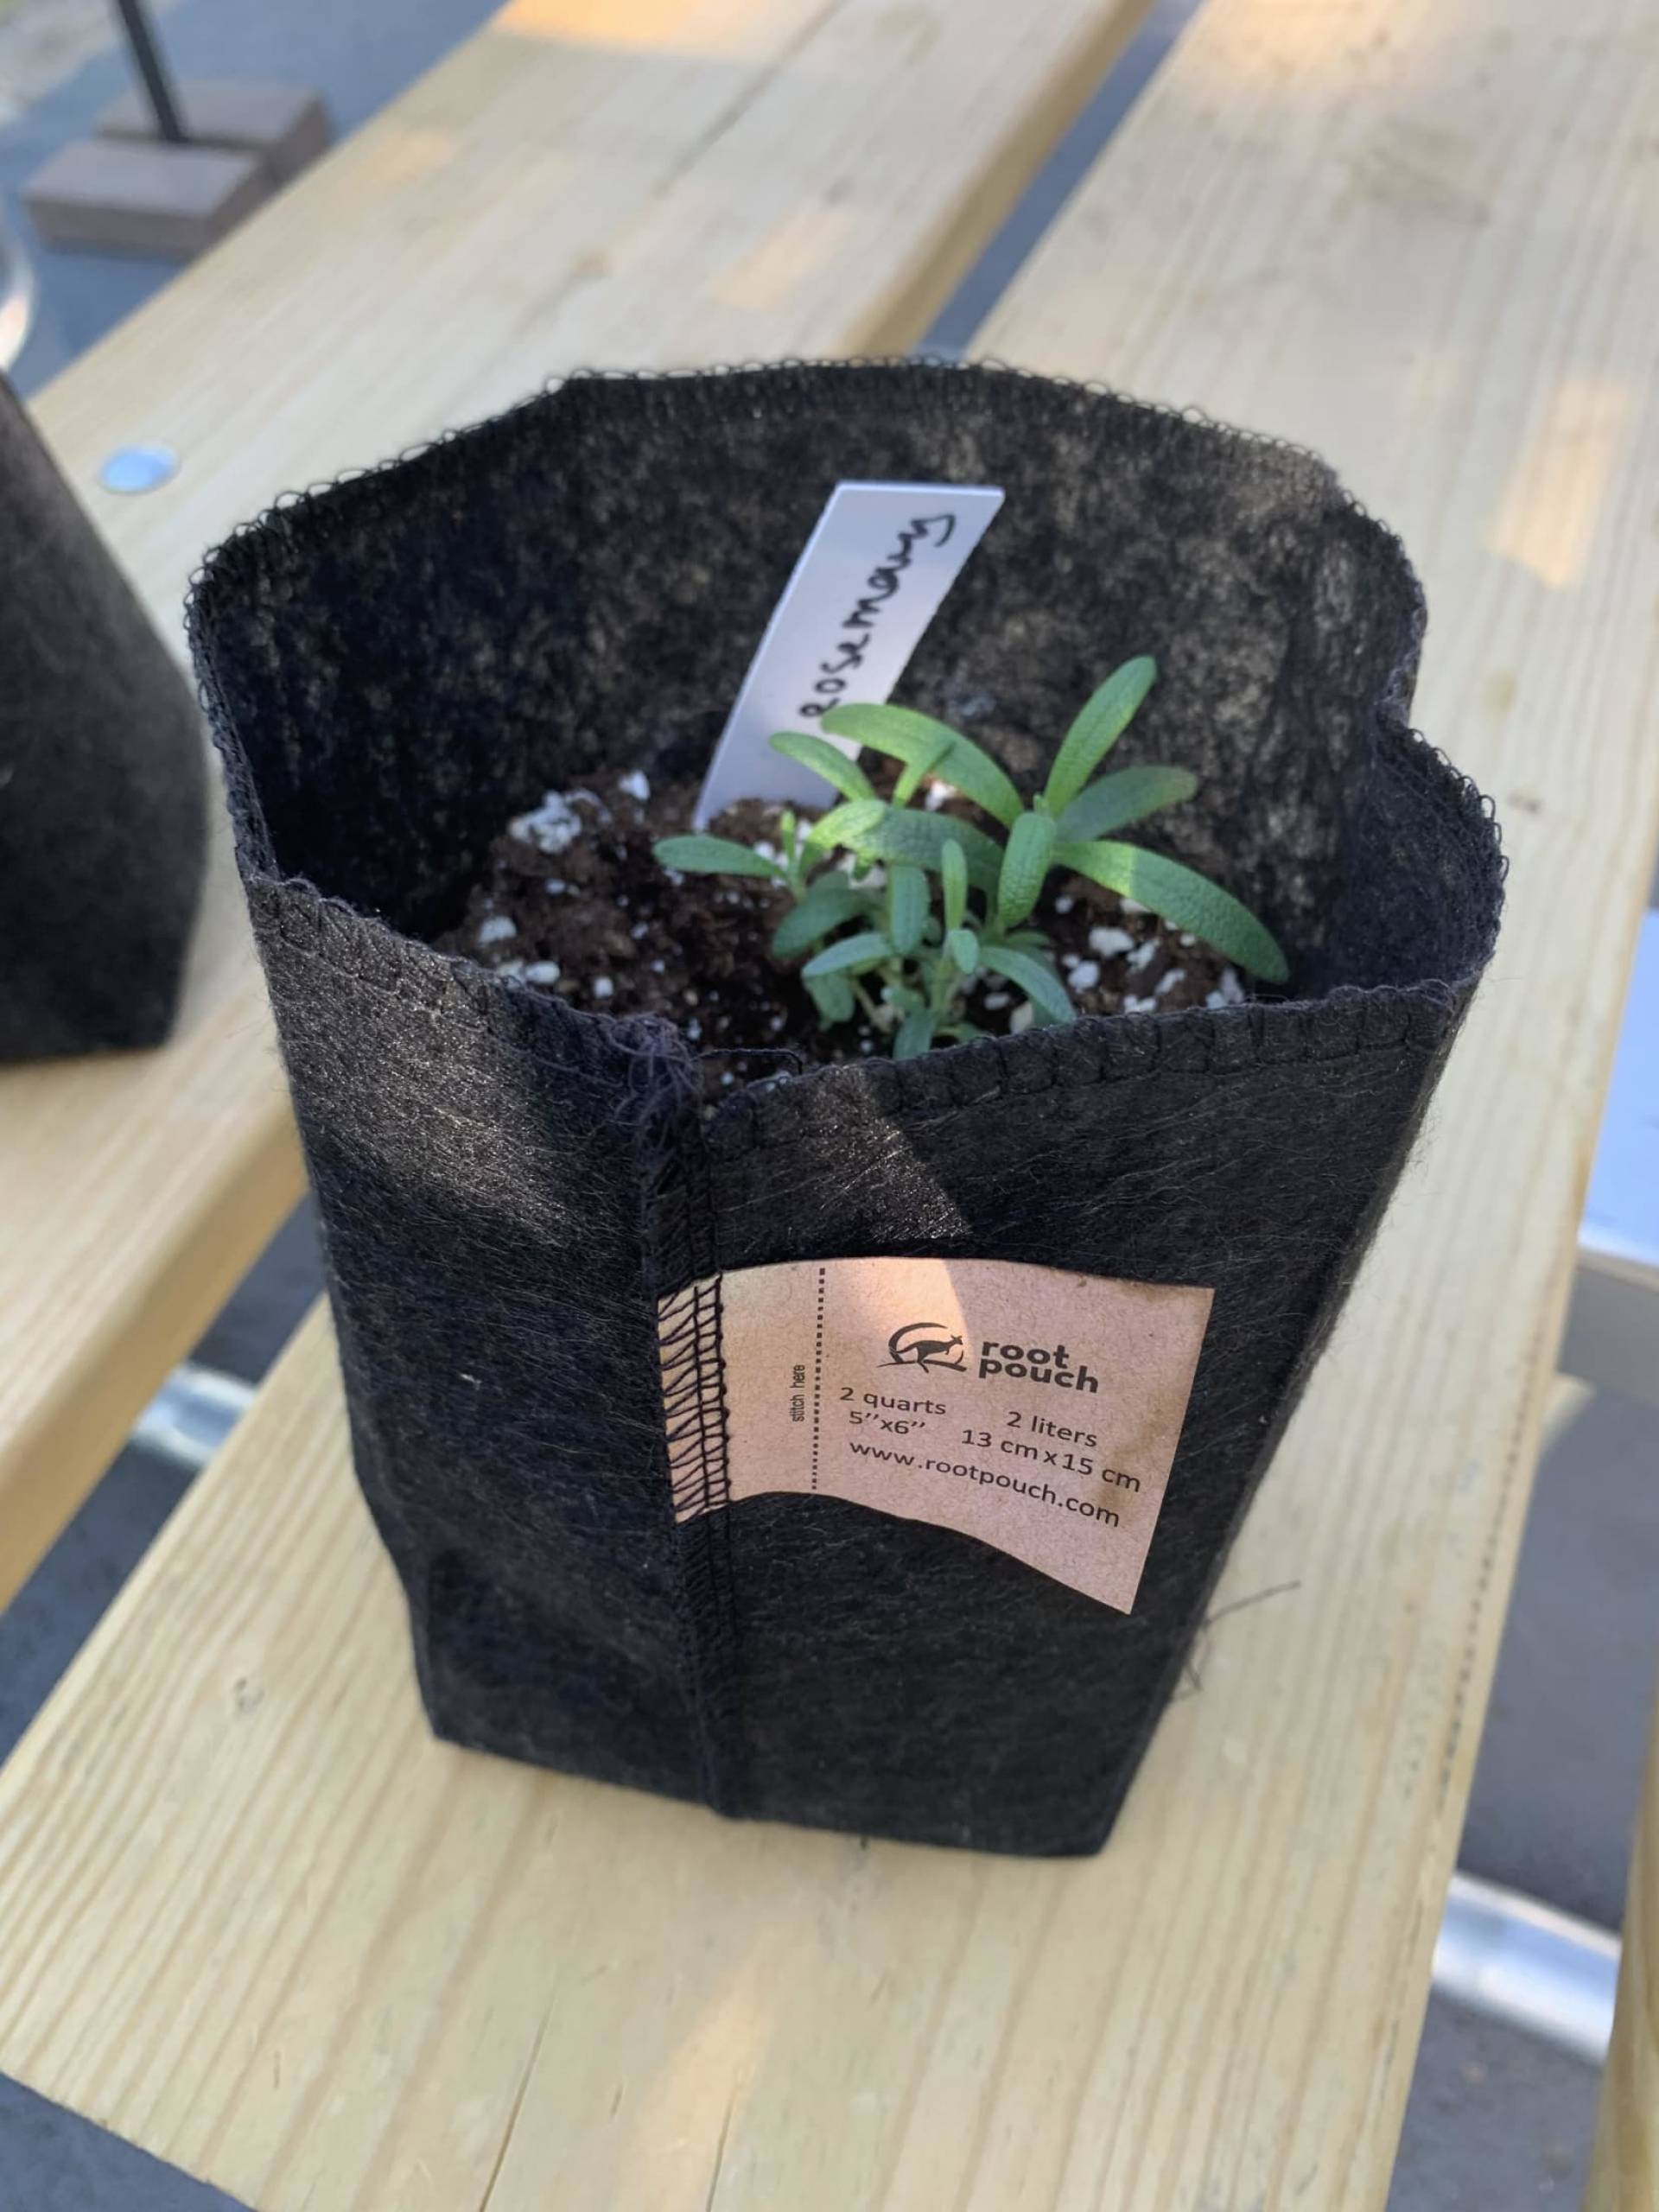 Rosemary Plant ($10)